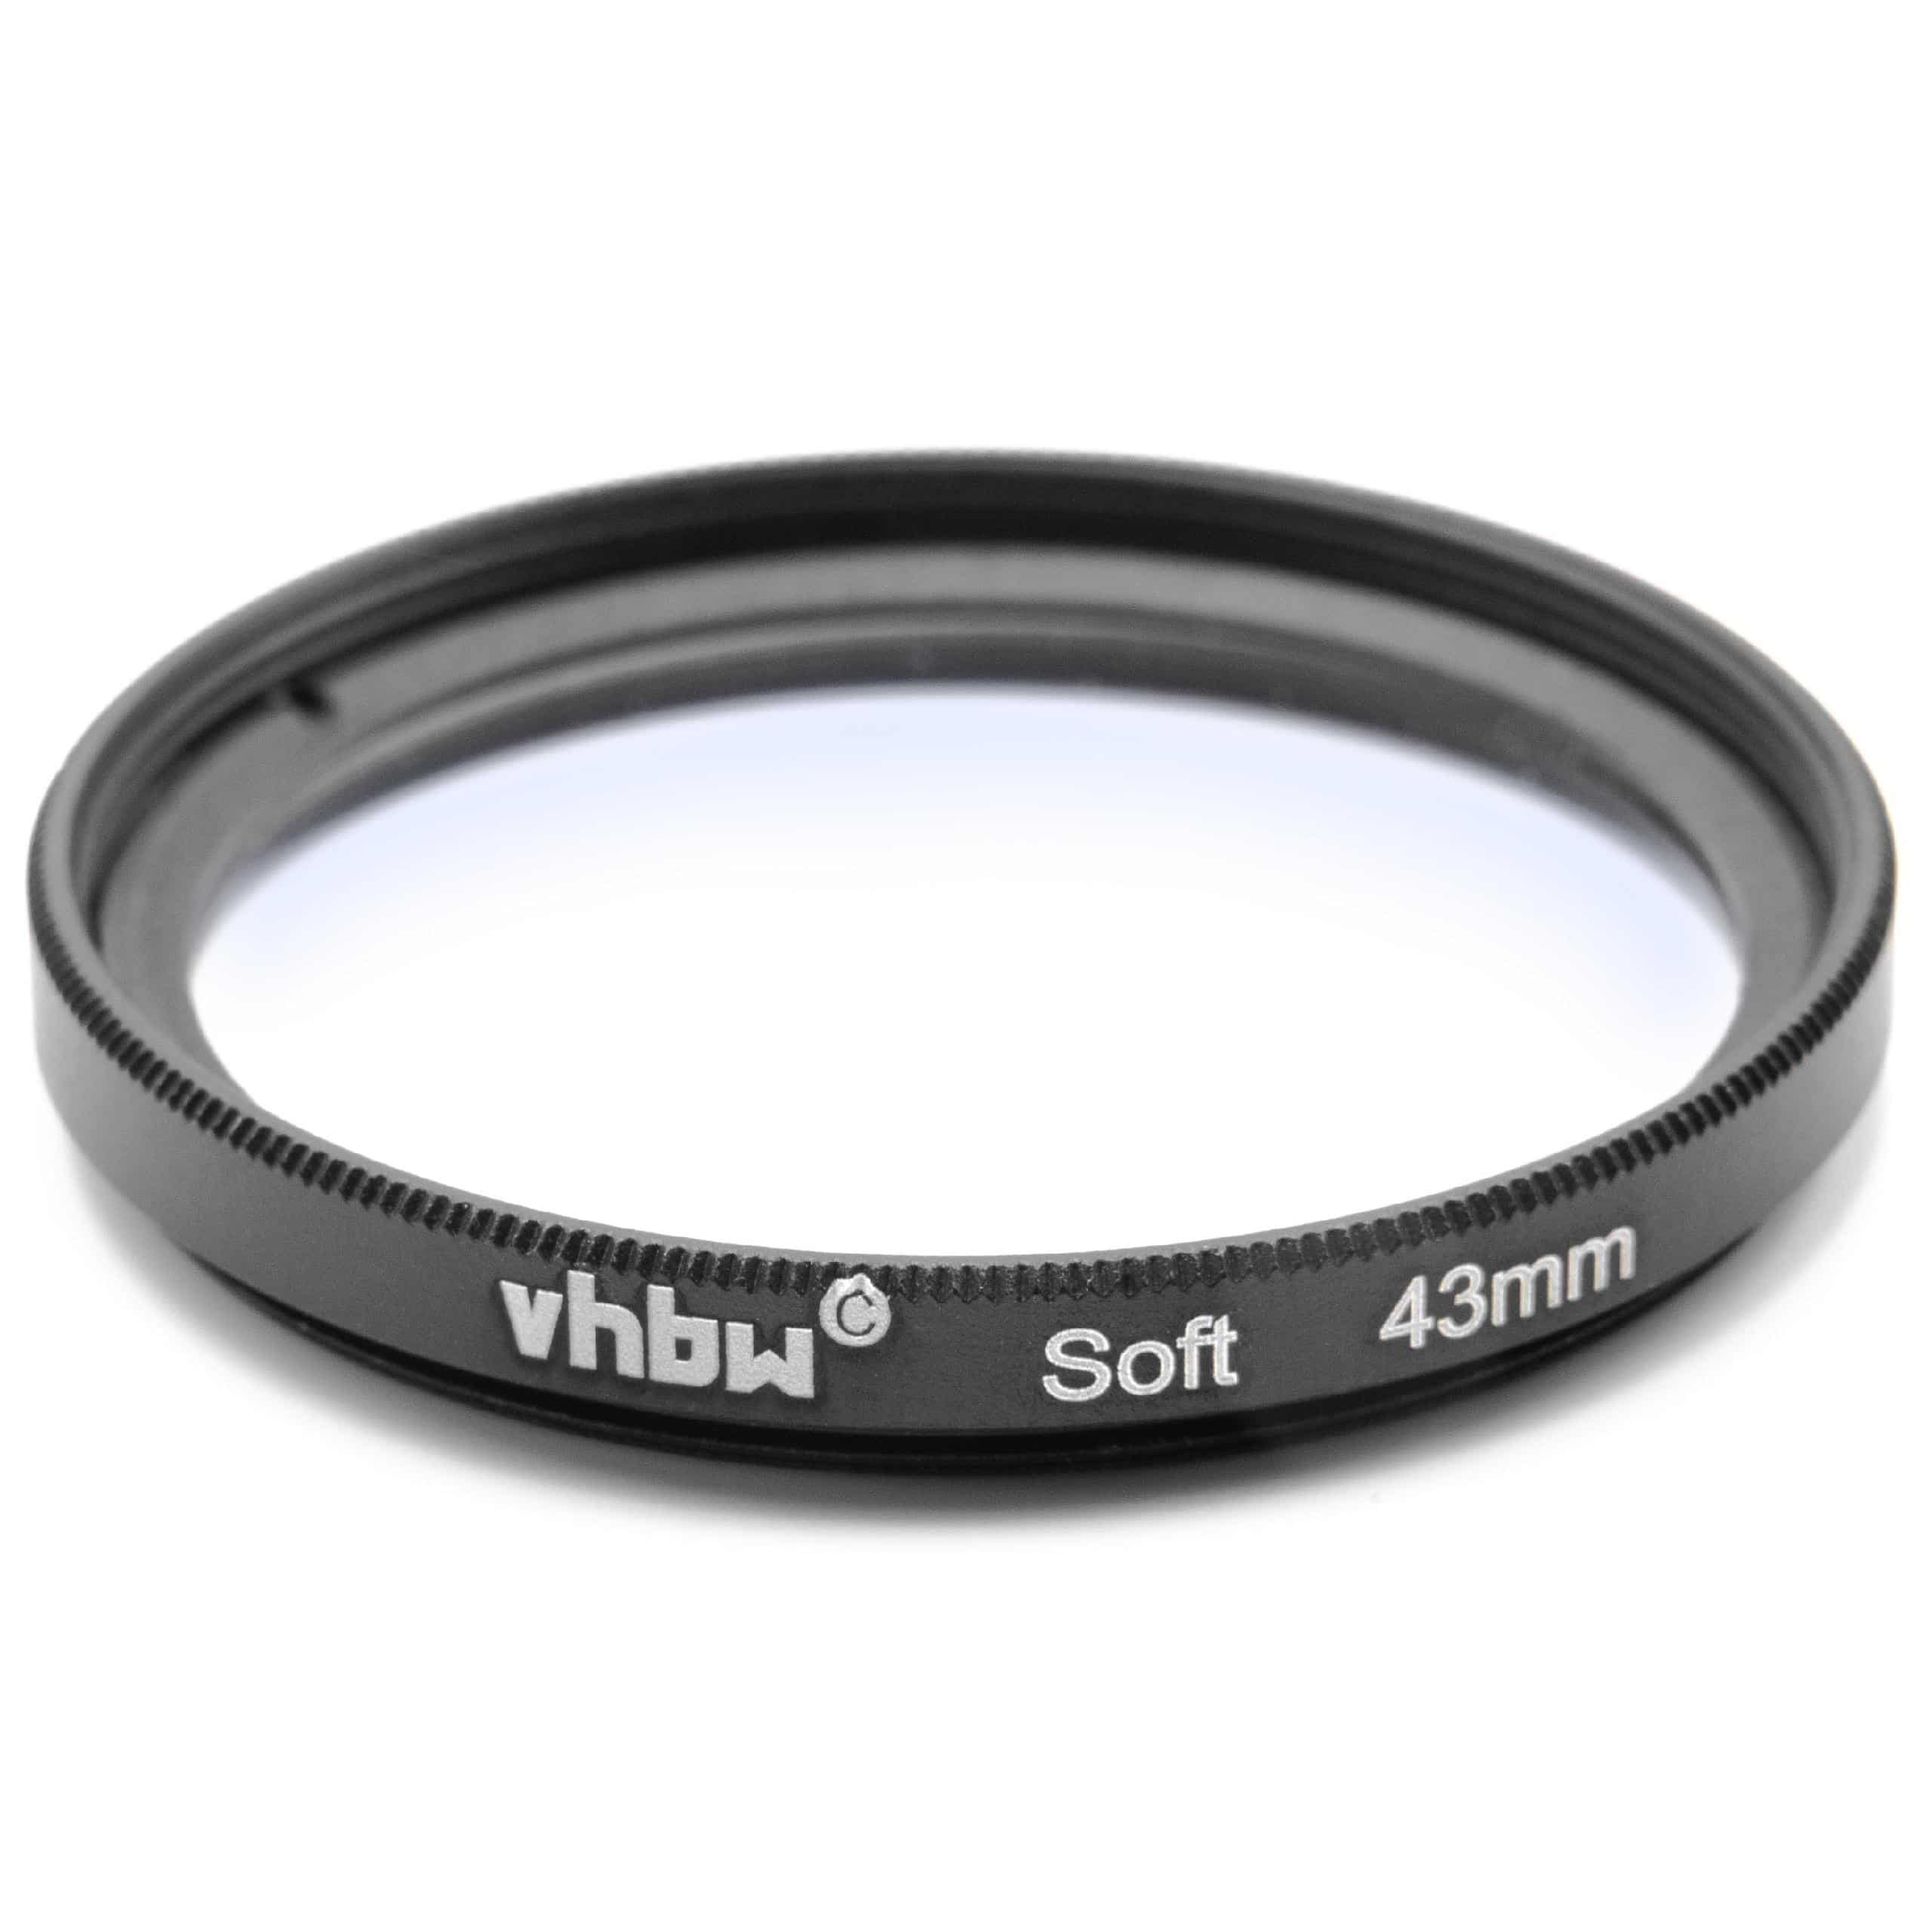 Filtr dyfuzyjny 43mm na obiektyw do różnych aparatów - filtr soft focus